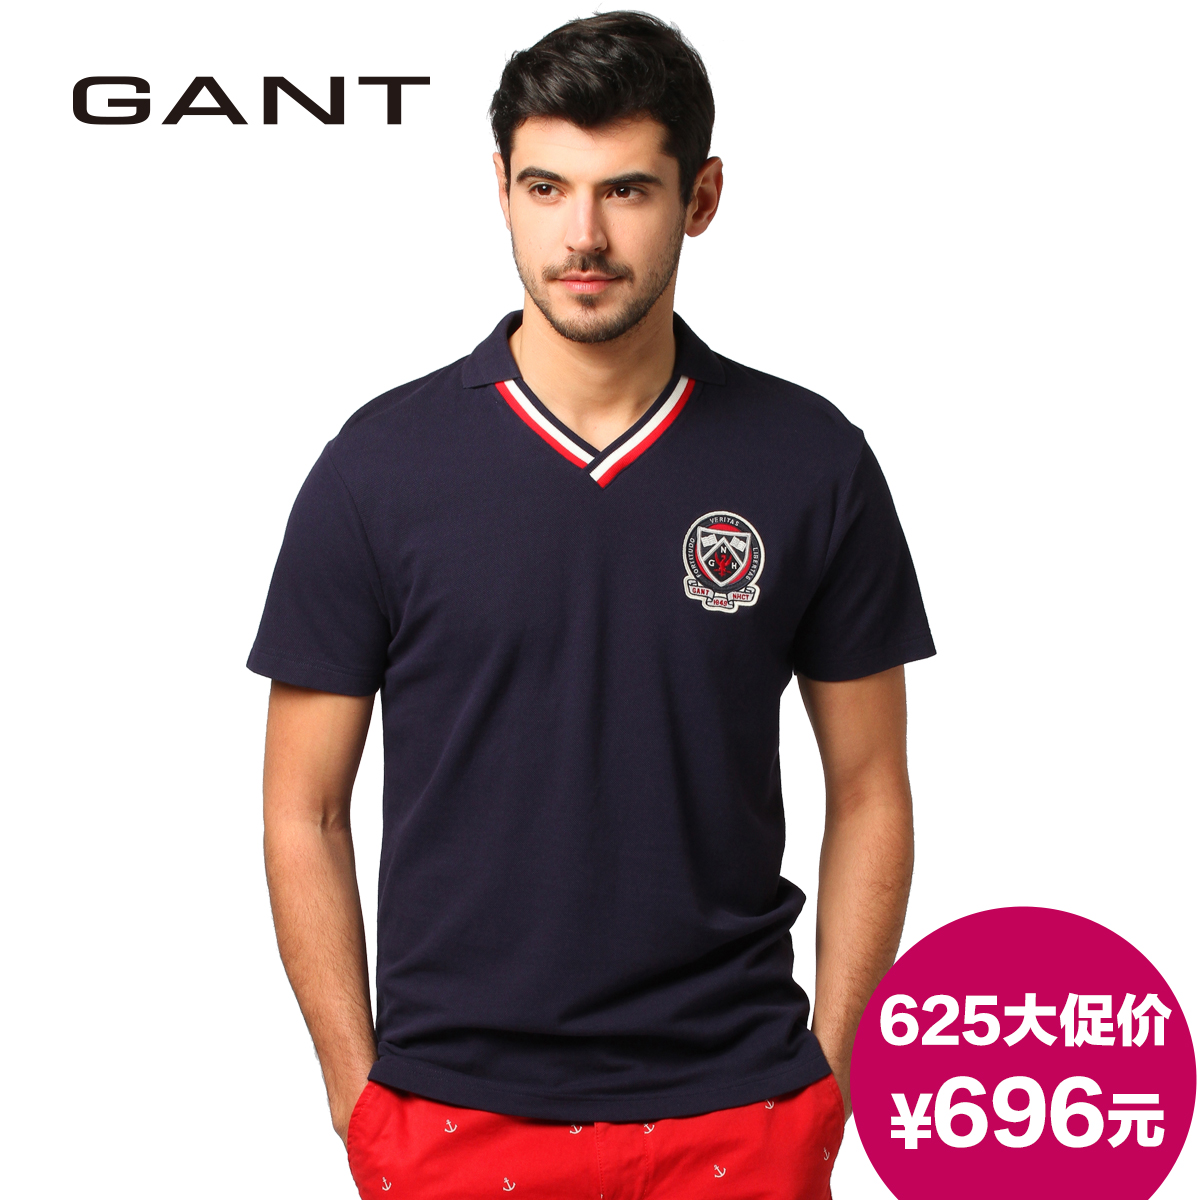   Gant/Gantt